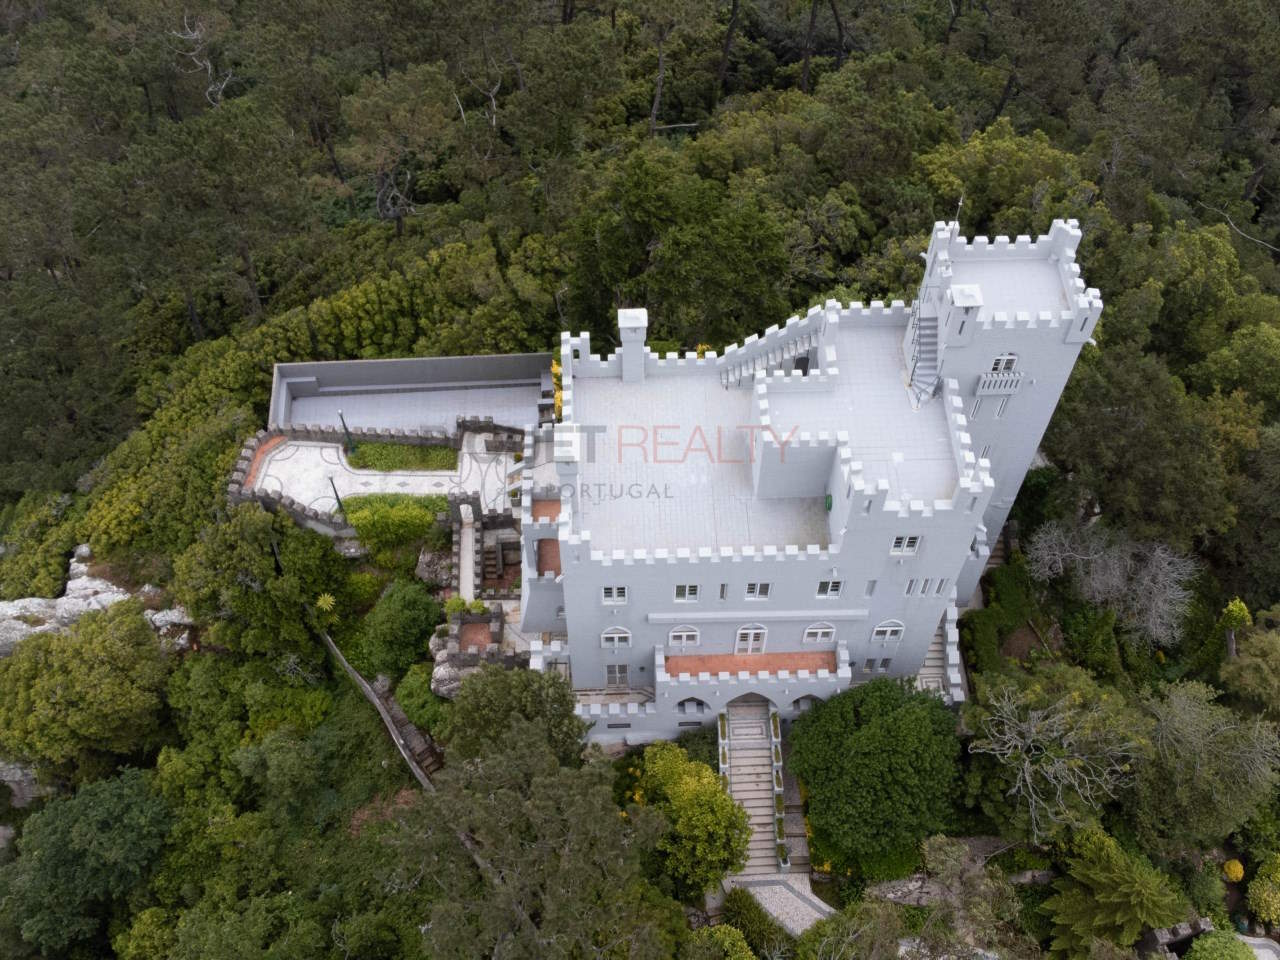 Castle for sale in Portugal - Castelo Monte Sereno 2